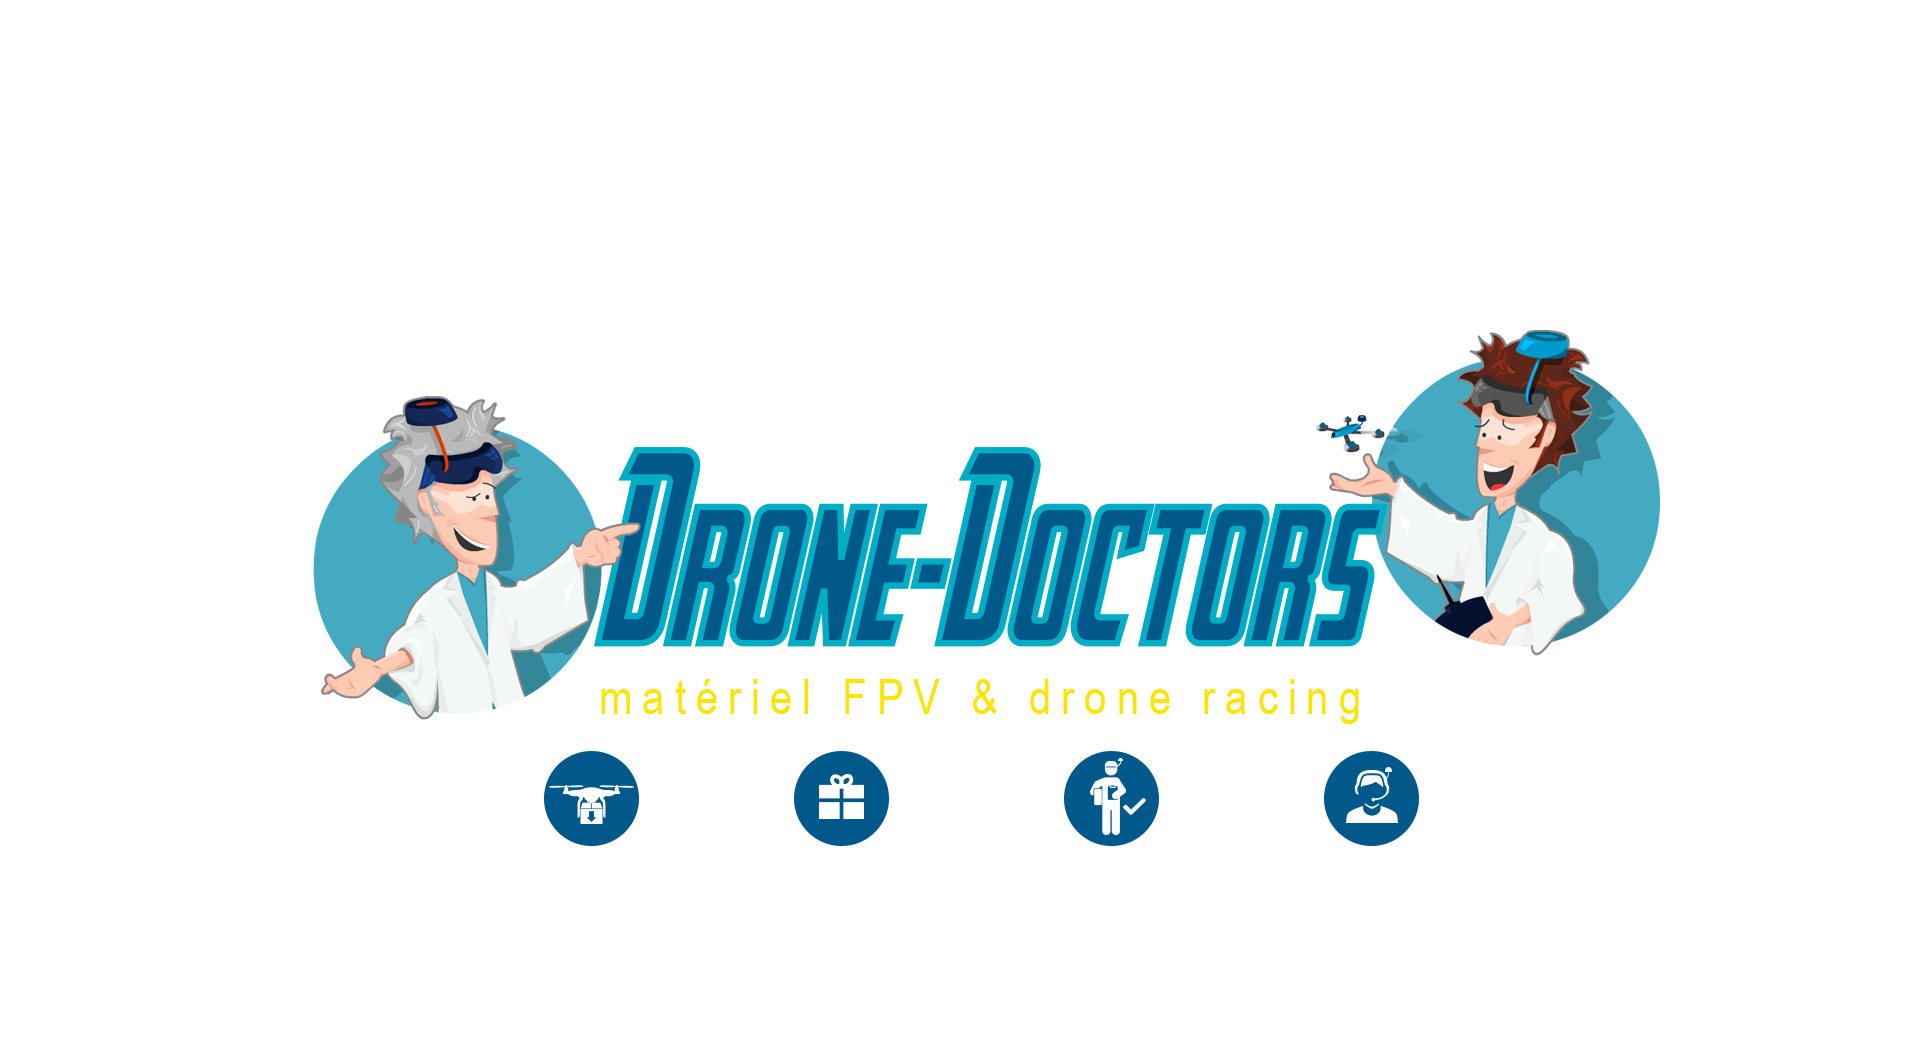 bienvenue sur le site de drone doctors